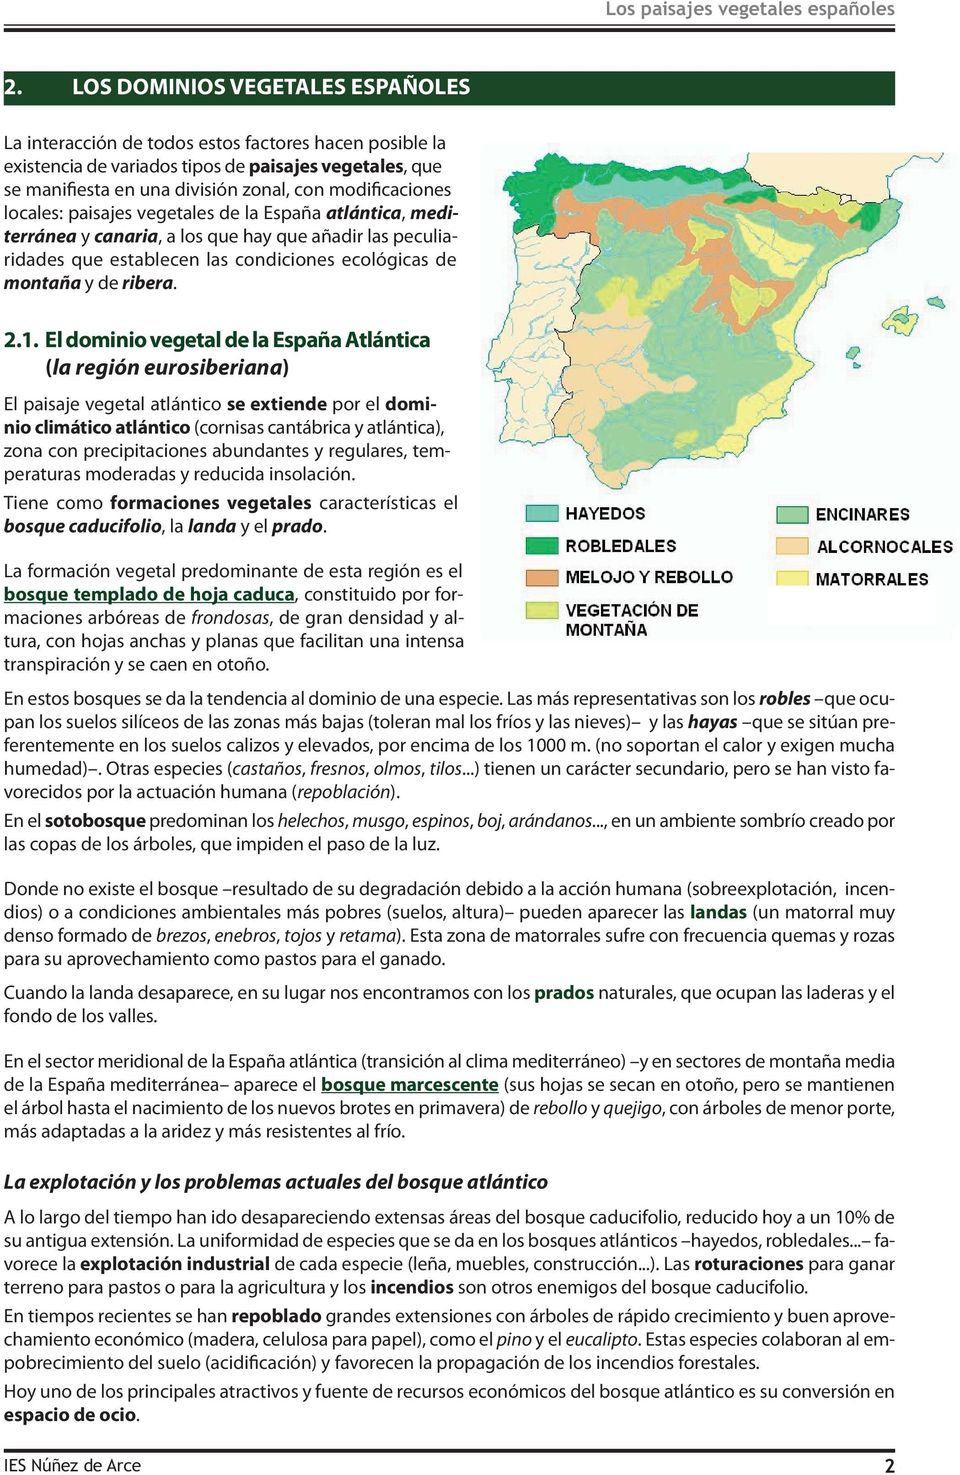 modificaciones locales: paisajes vegetales de la España atlántica, mediterránea y canaria, a los que hay que añadir las peculiaridades que establecen las condiciones ecológicas de montaña y de ribera.